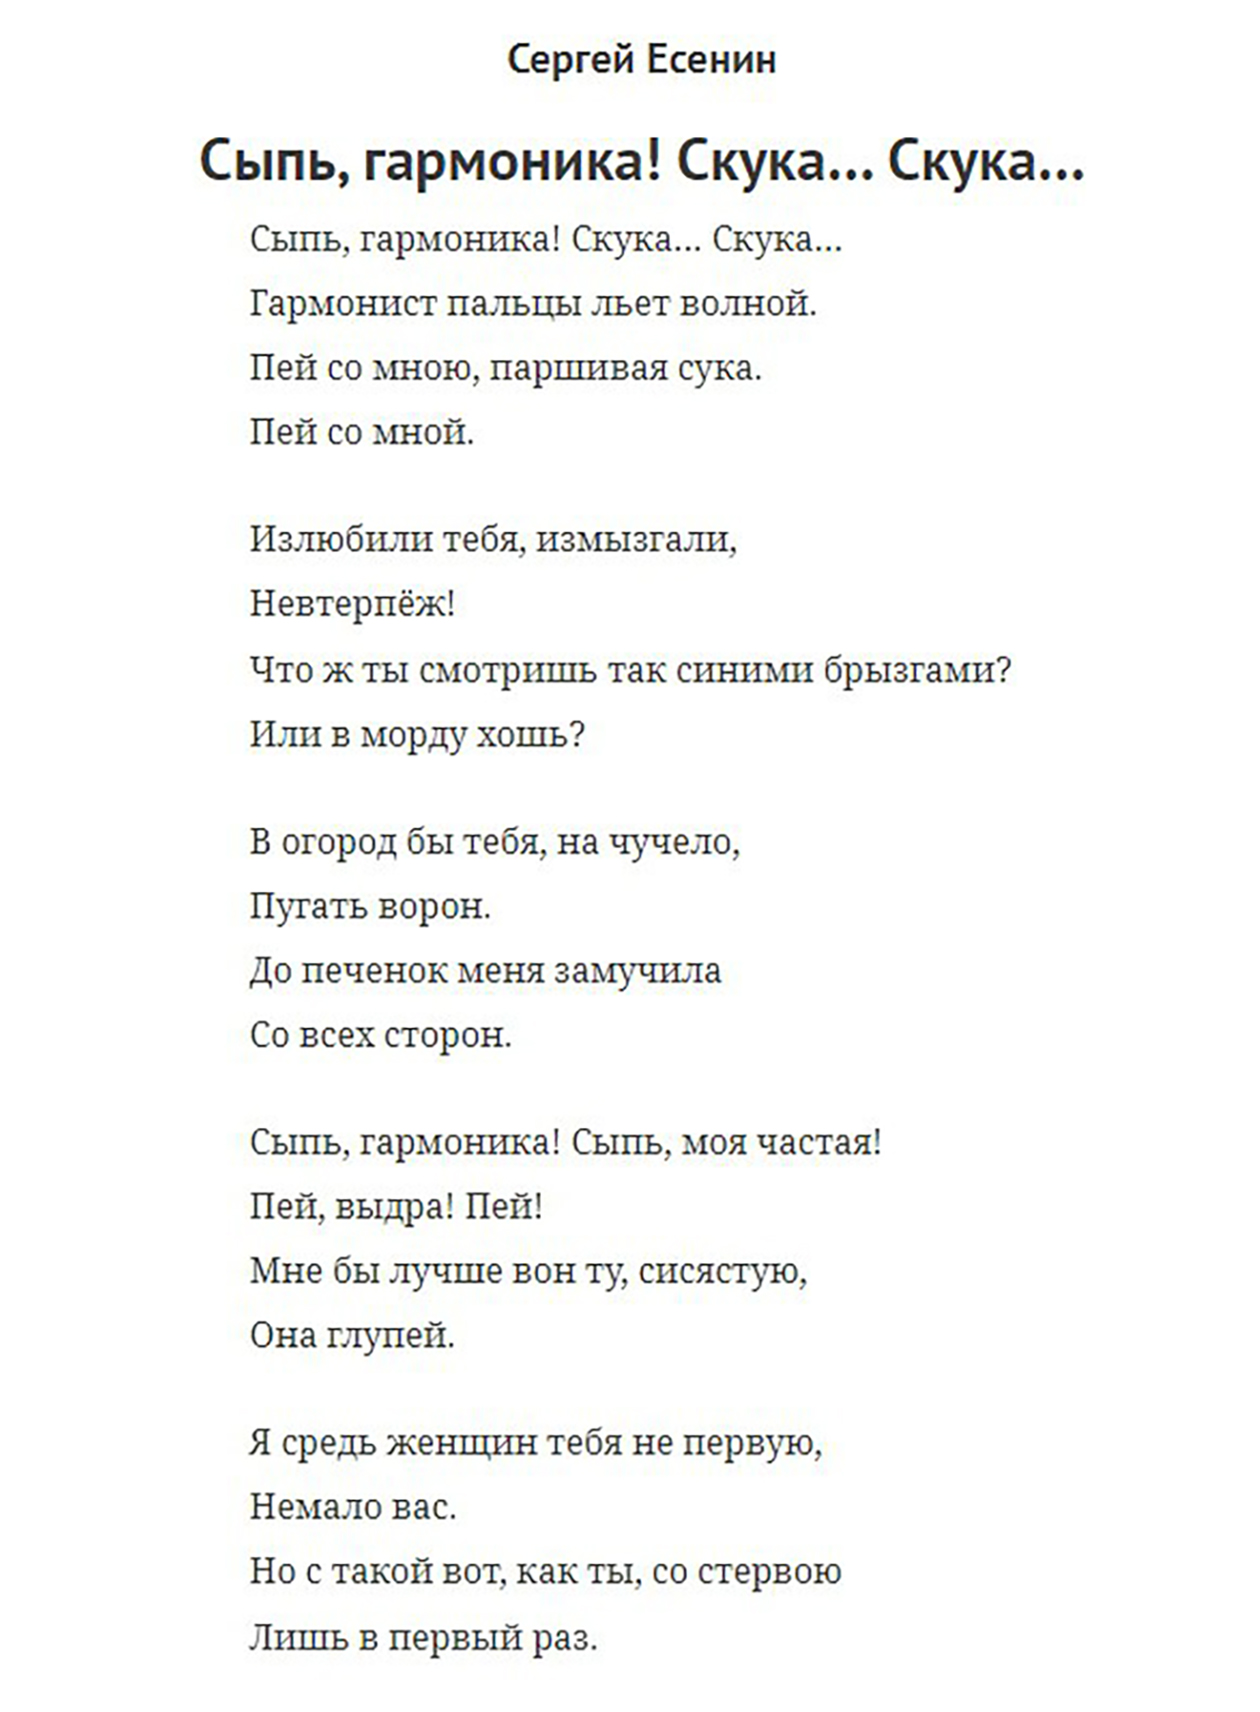 Отрывок есенинского стихотворения «Сыпь, гармоника», с которым я хотела выступить на конкурсе, но получила отказ. Источник: culture.ru